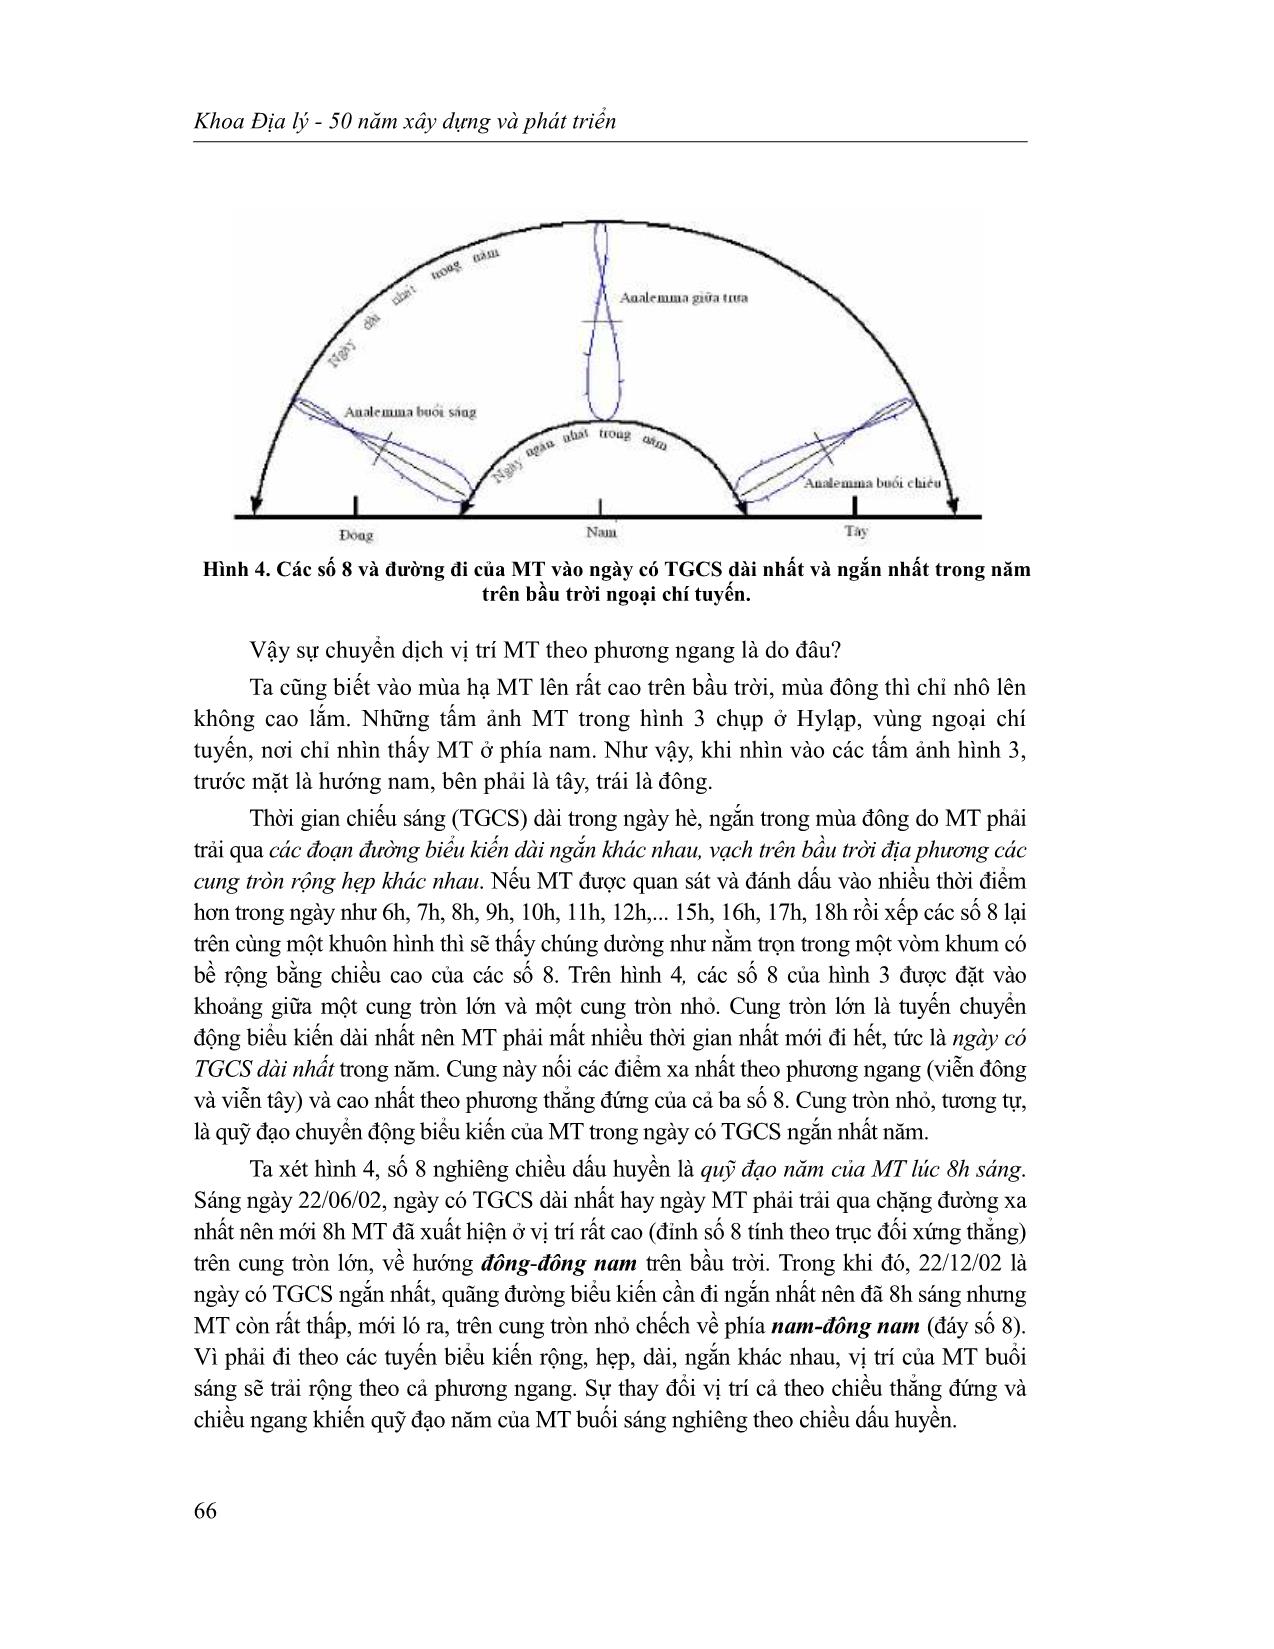 Trục nghiêng, quỹ đạo ellip của trái đất và các số 8 trên bầu trời trang 3